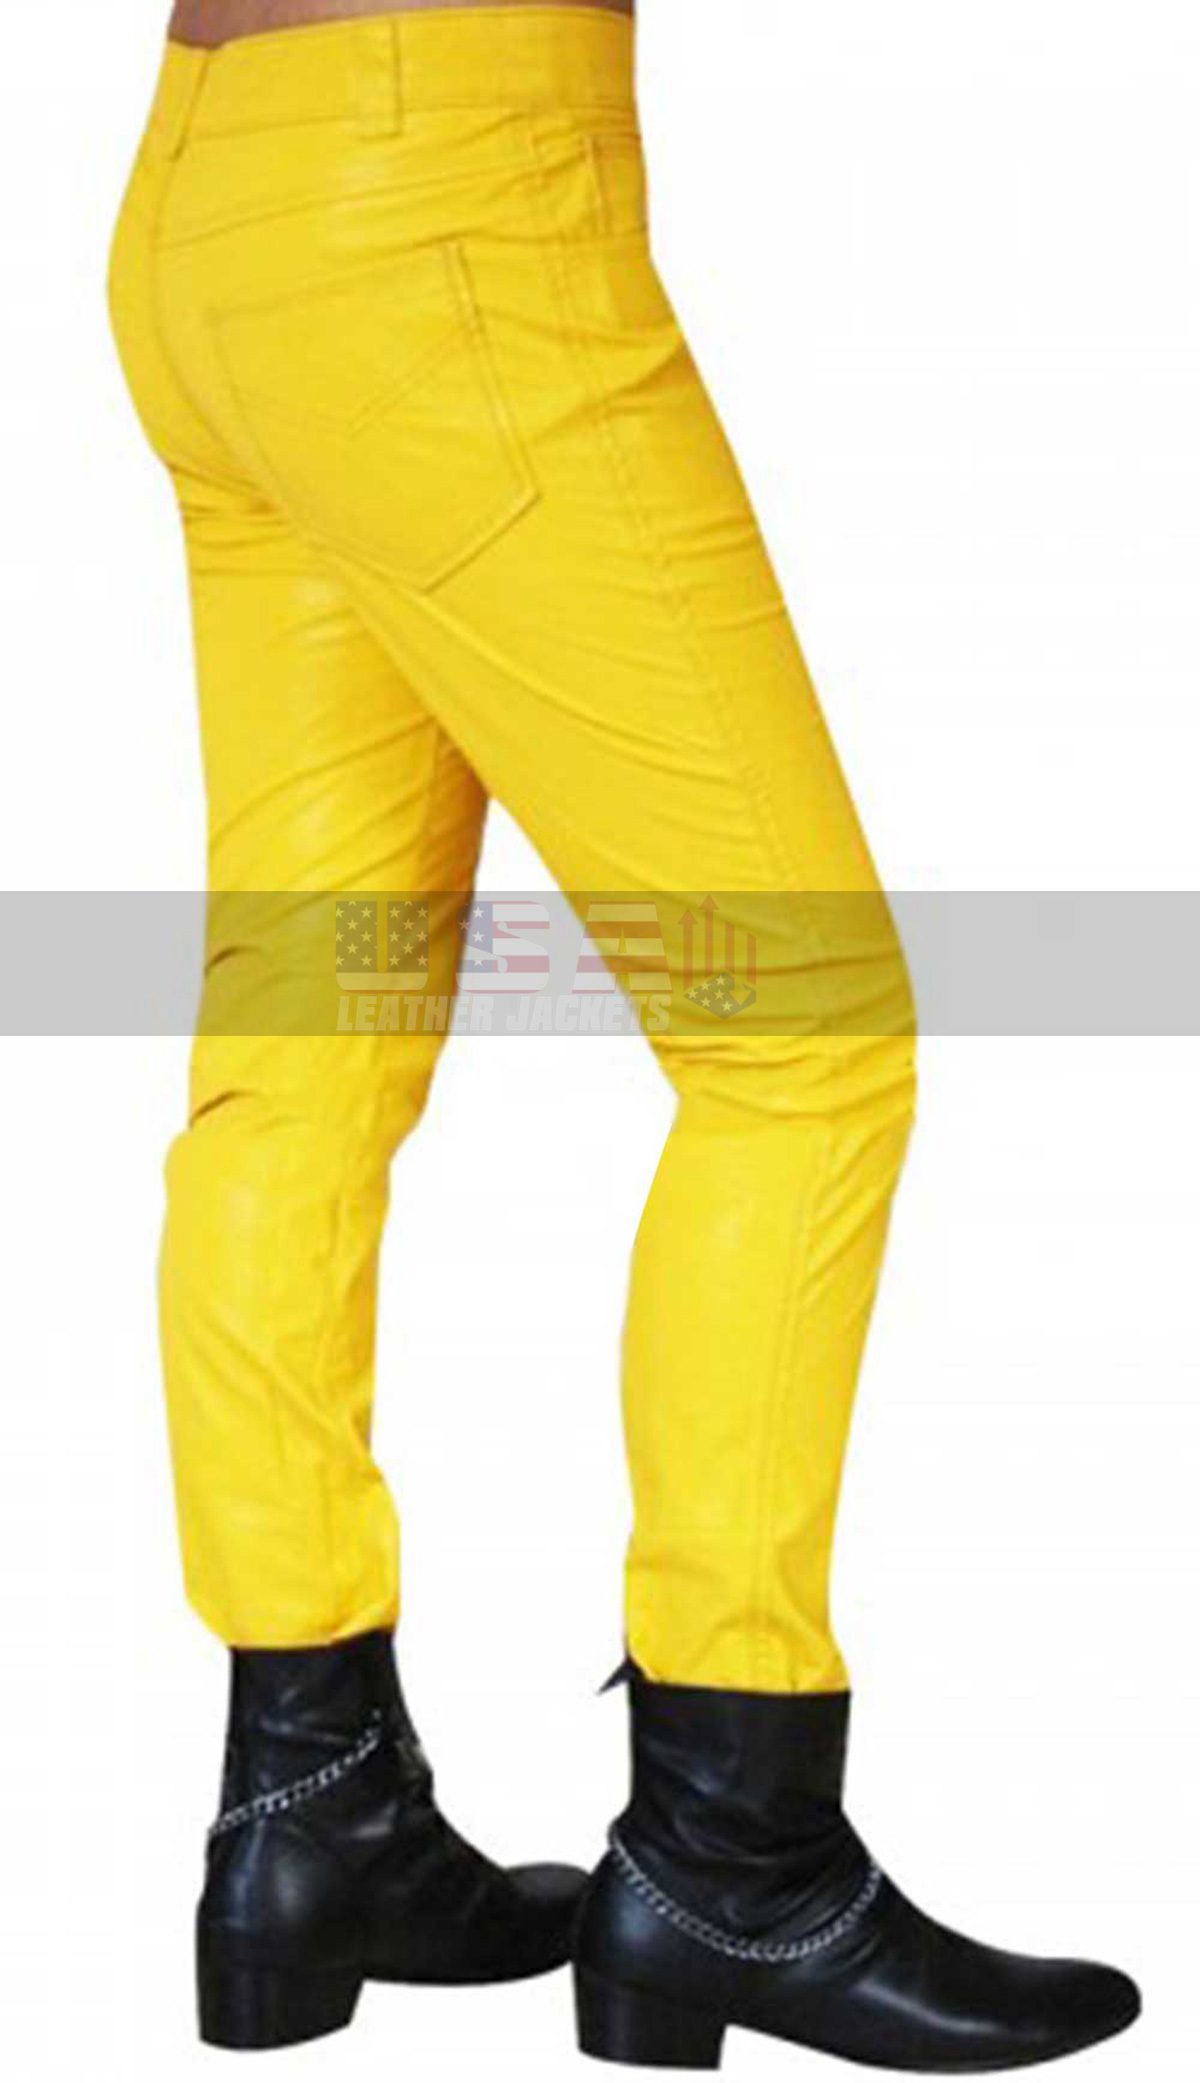 Freddie Mercury Slim Fit Yellow Leather Pants